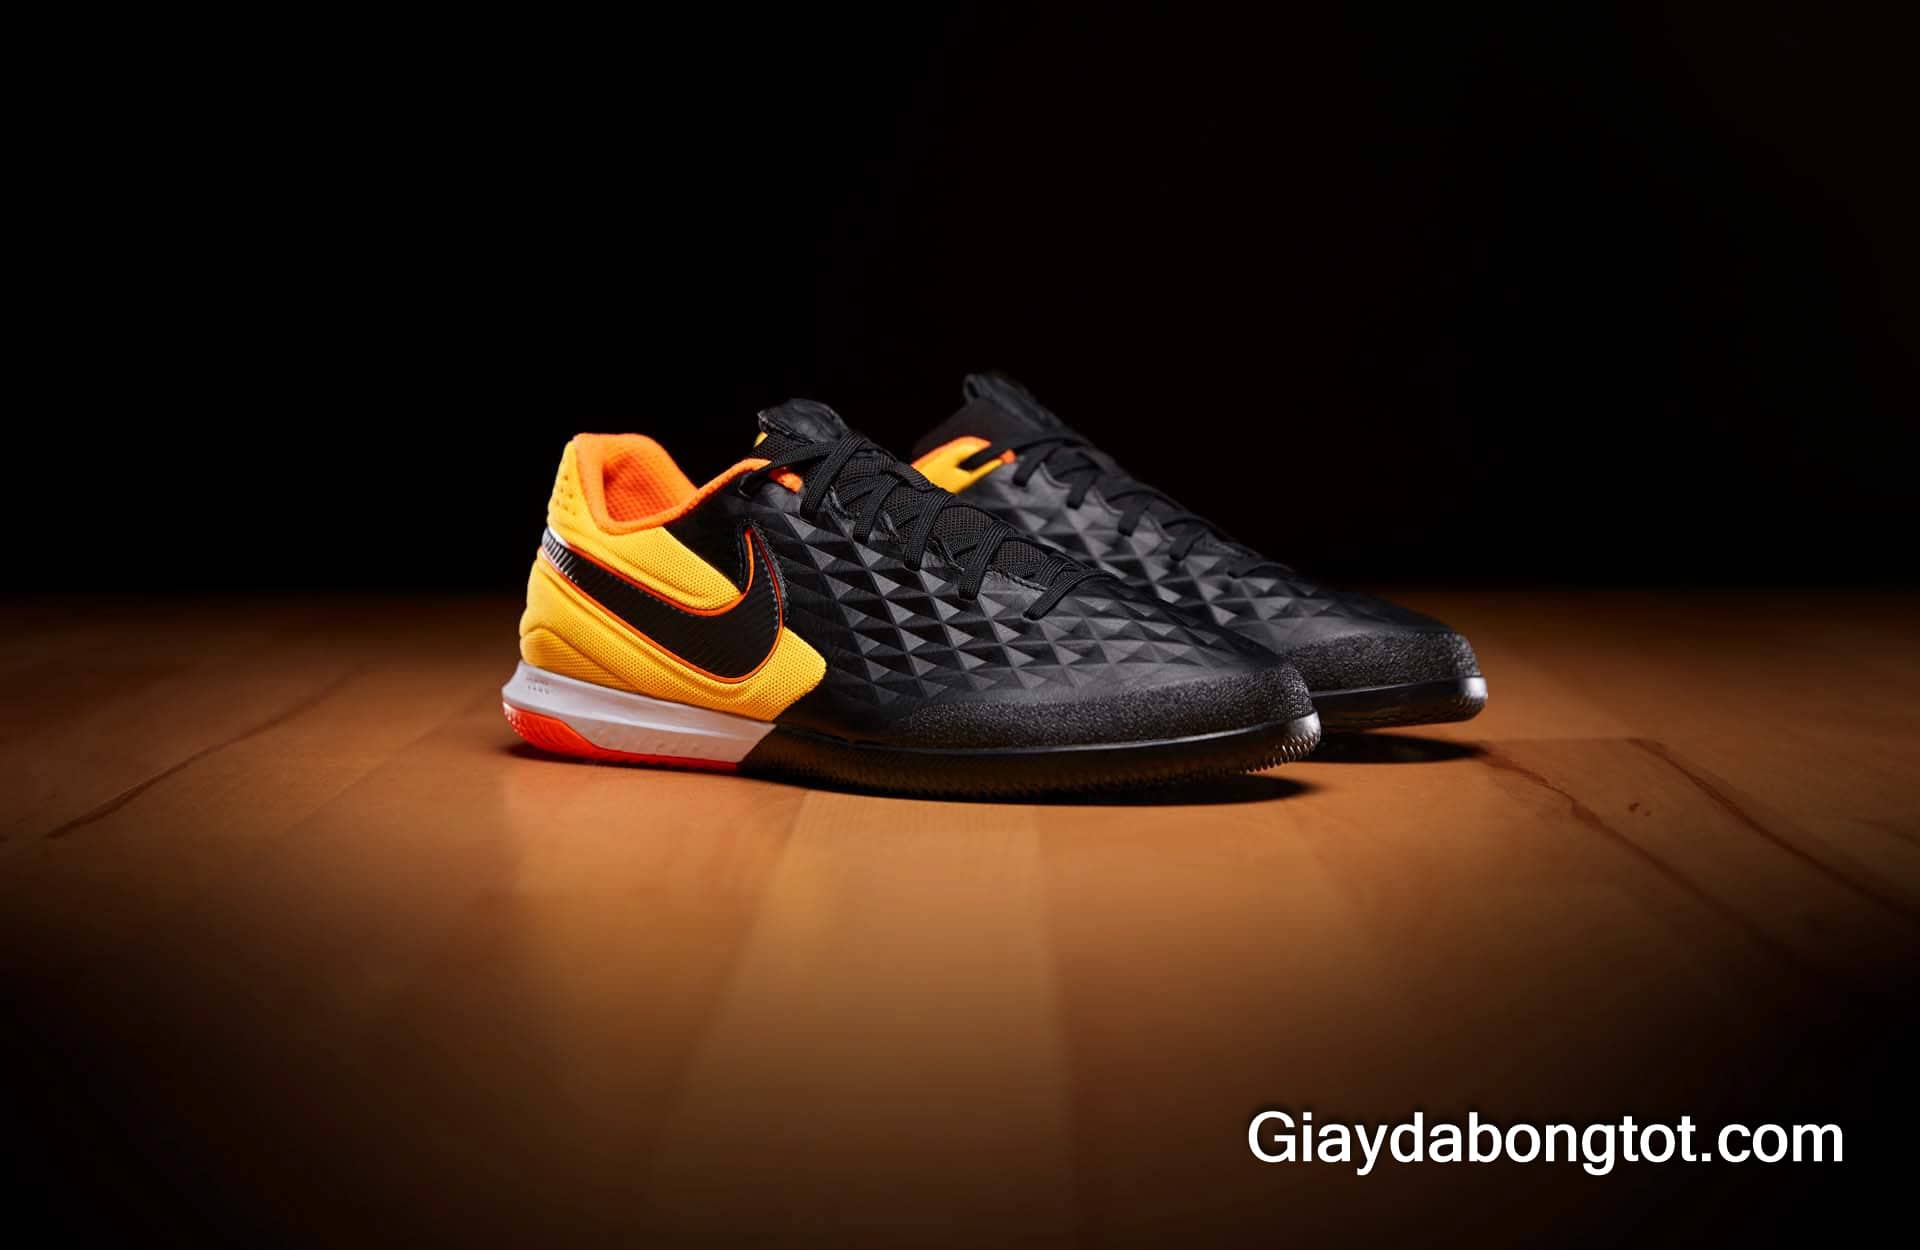 Giày đá bóng da mềm Nike Tiempo 8 React Pro màu đen đế bằng tuyệt đẹp